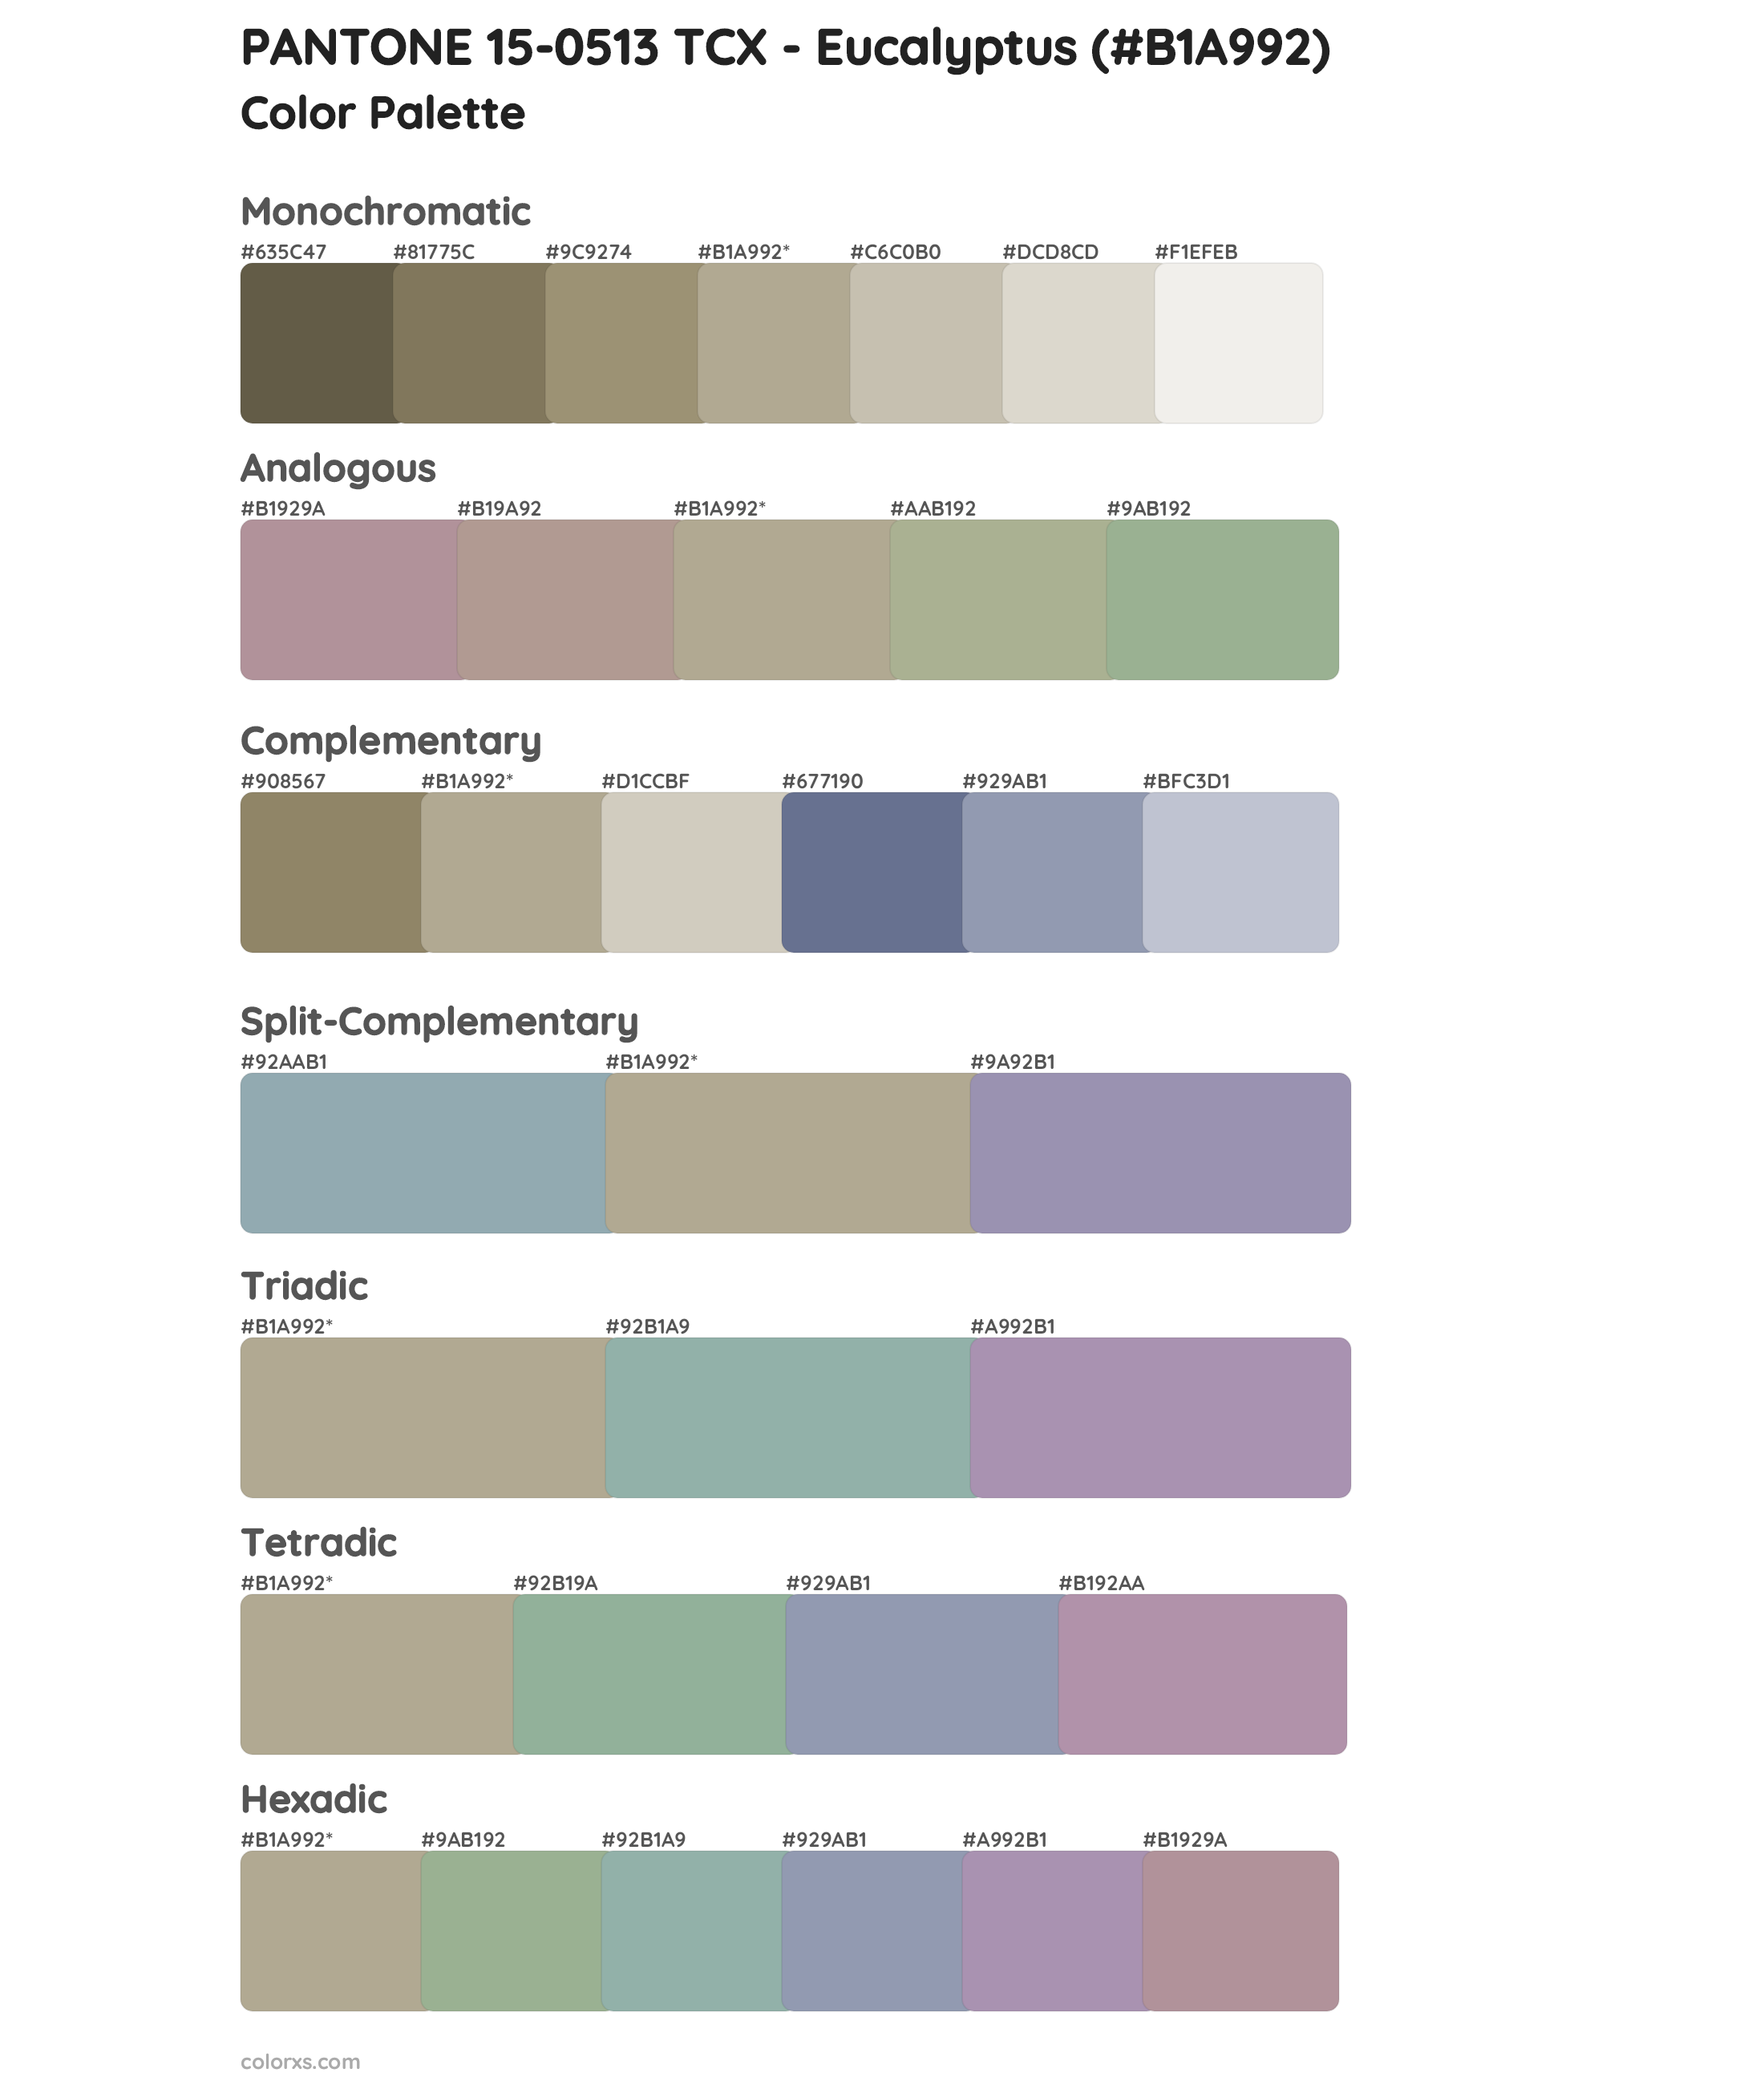 PANTONE 15-0513 TCX - Eucalyptus Color Scheme Palettes